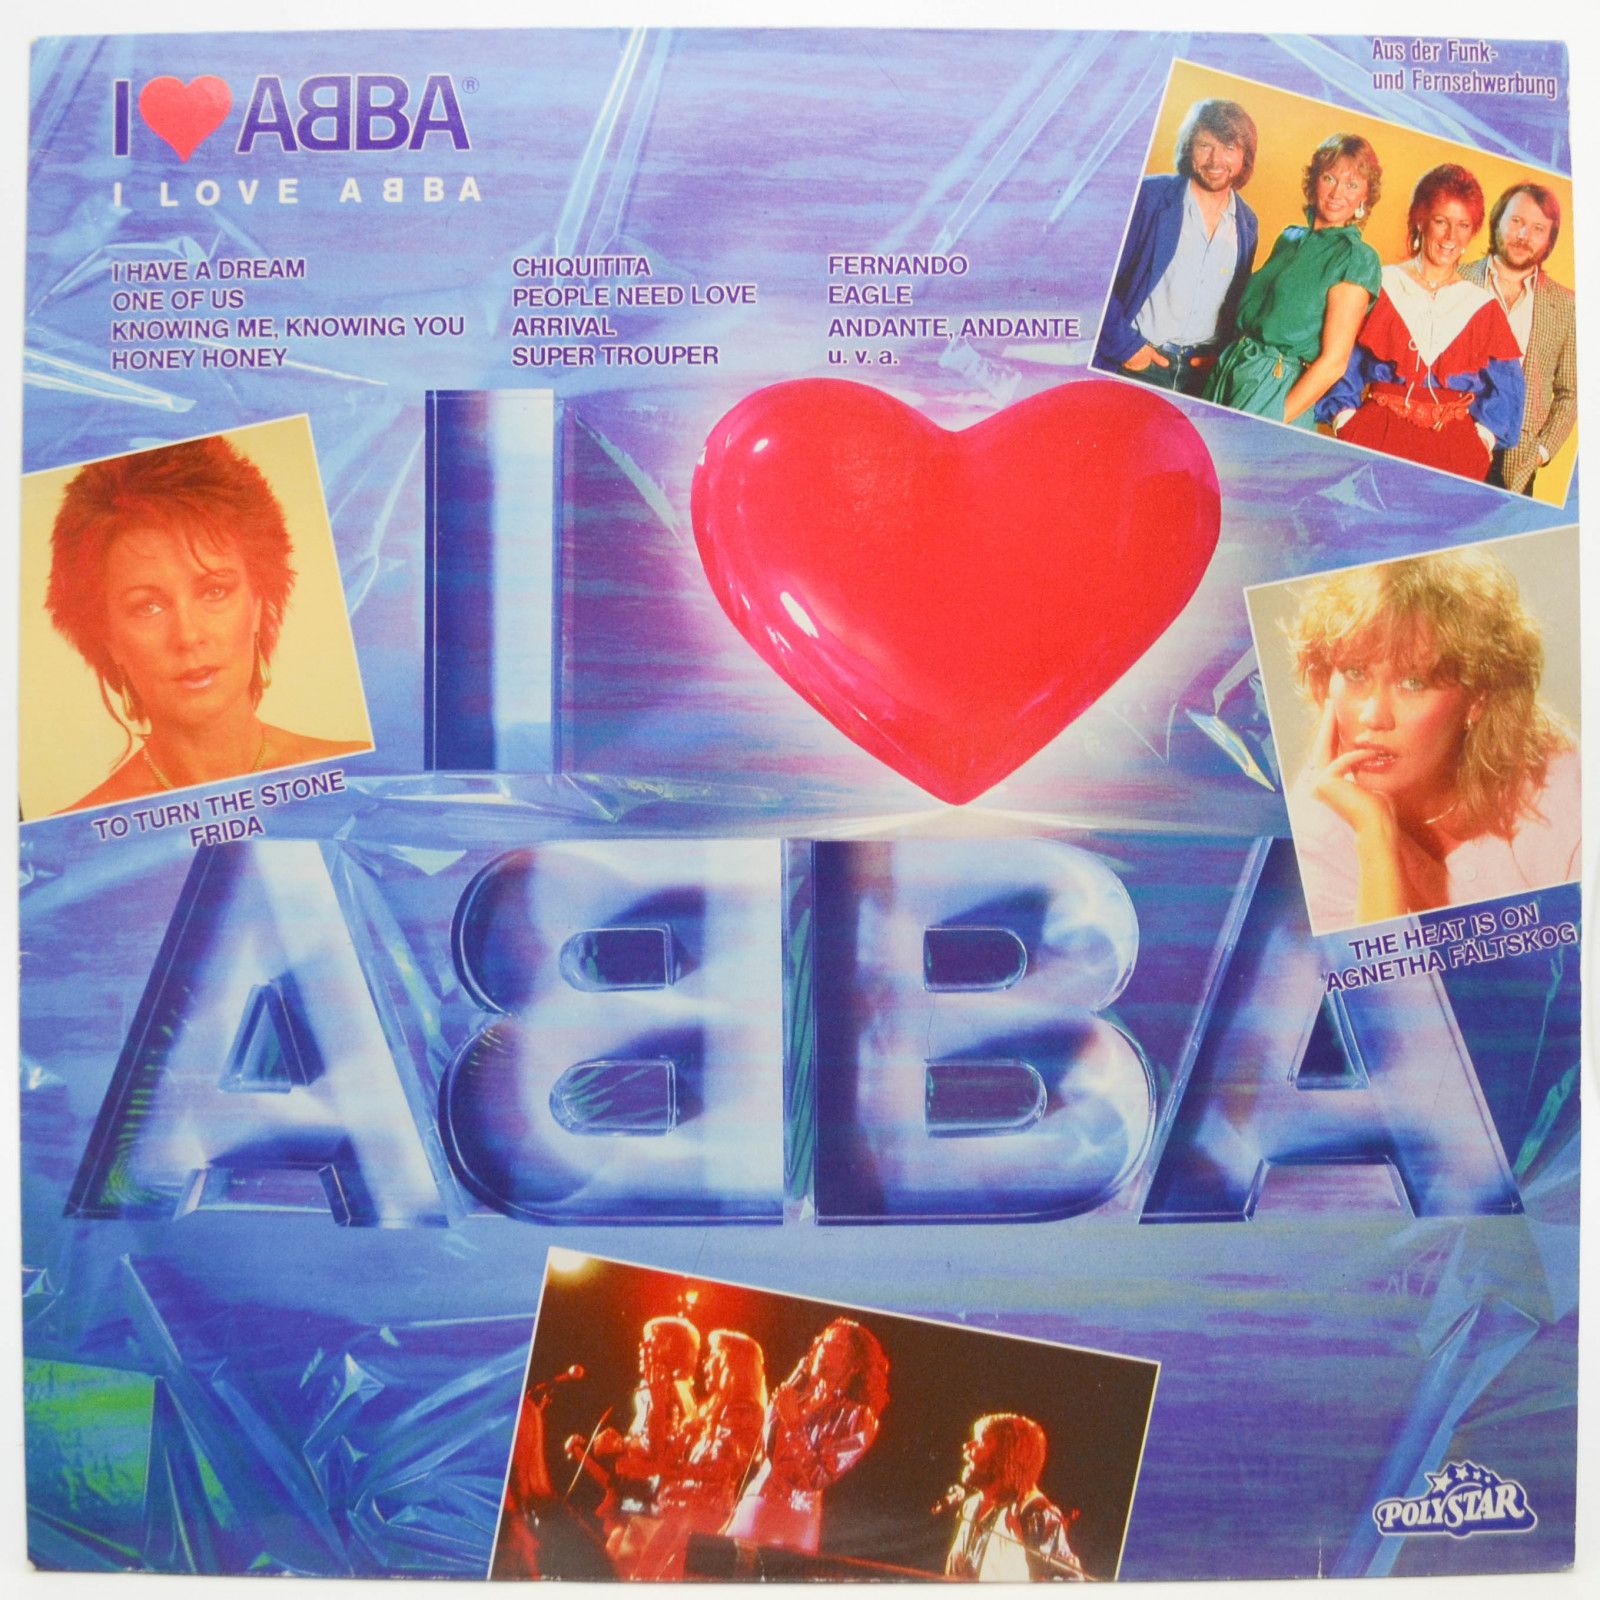 ABBA — I Love ABBA, 1984